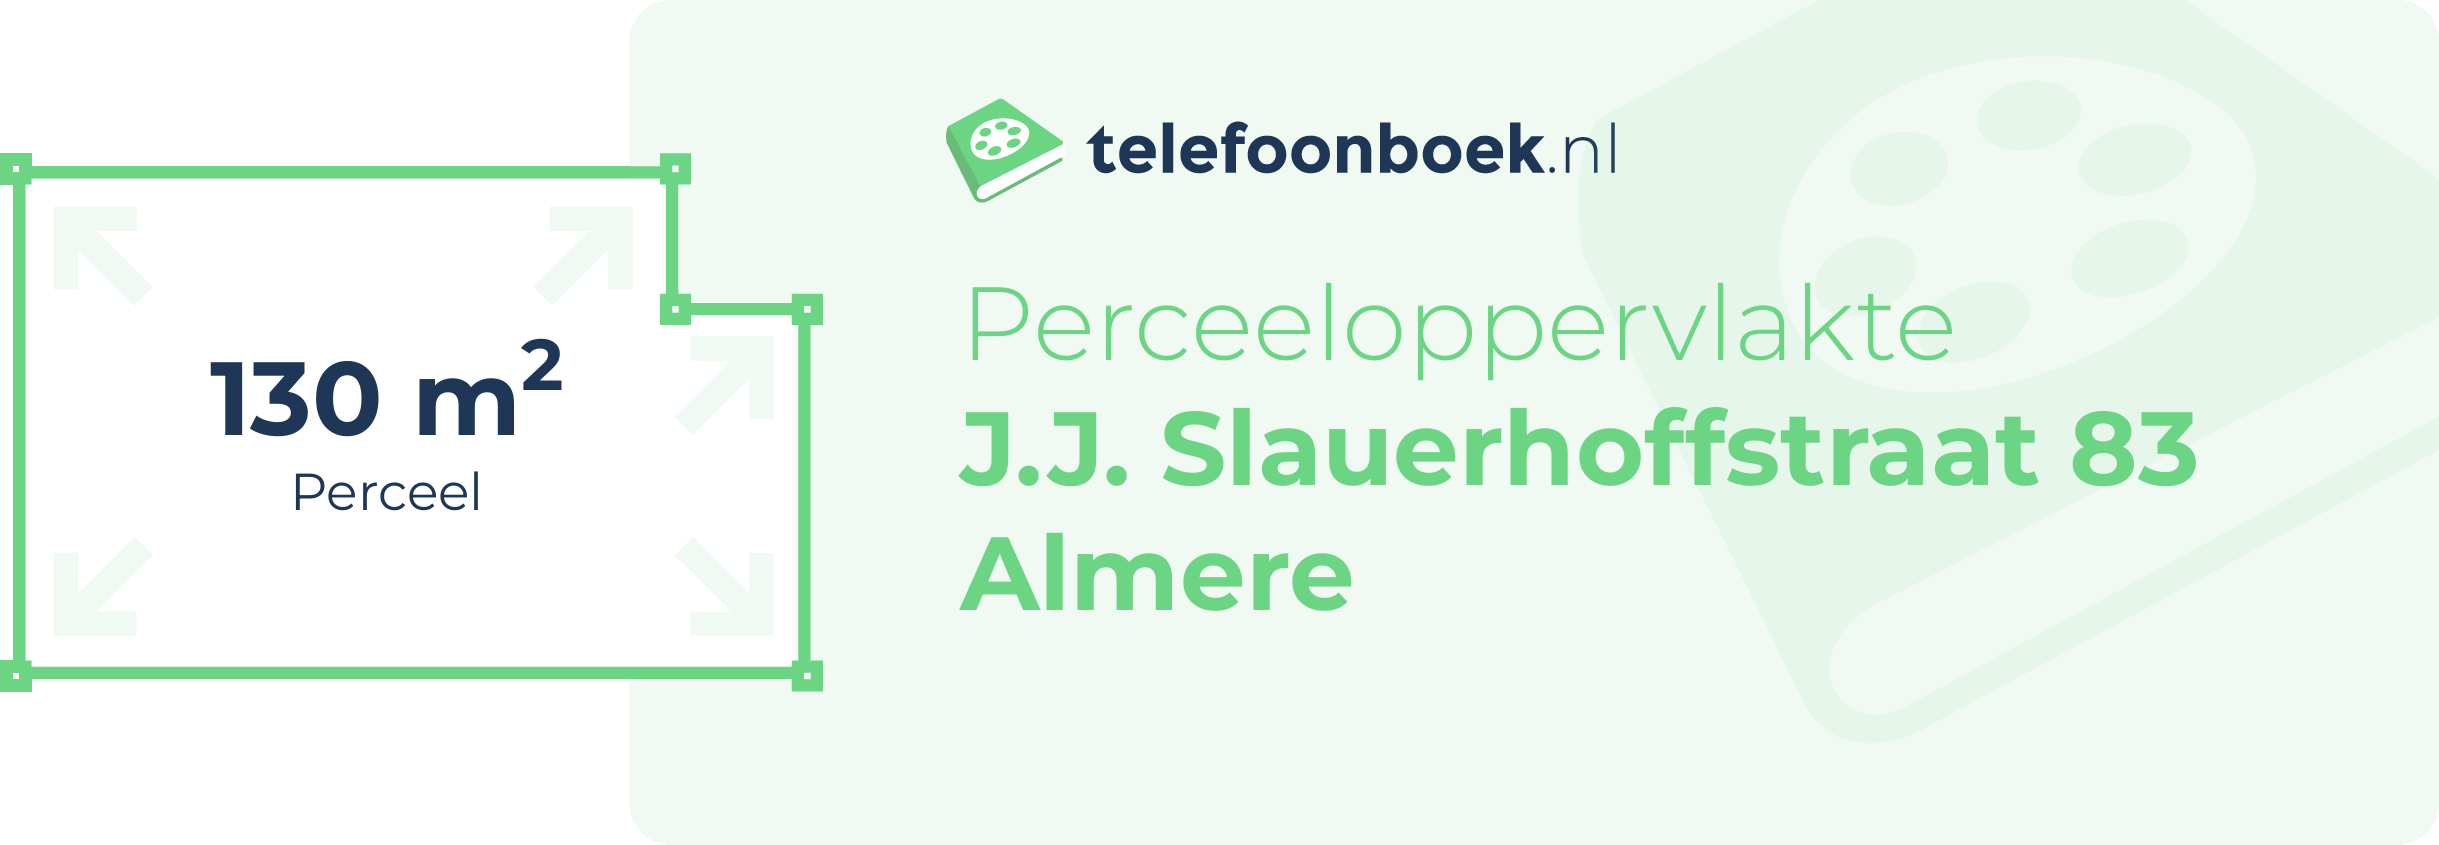 Perceeloppervlakte J.J. Slauerhoffstraat 83 Almere